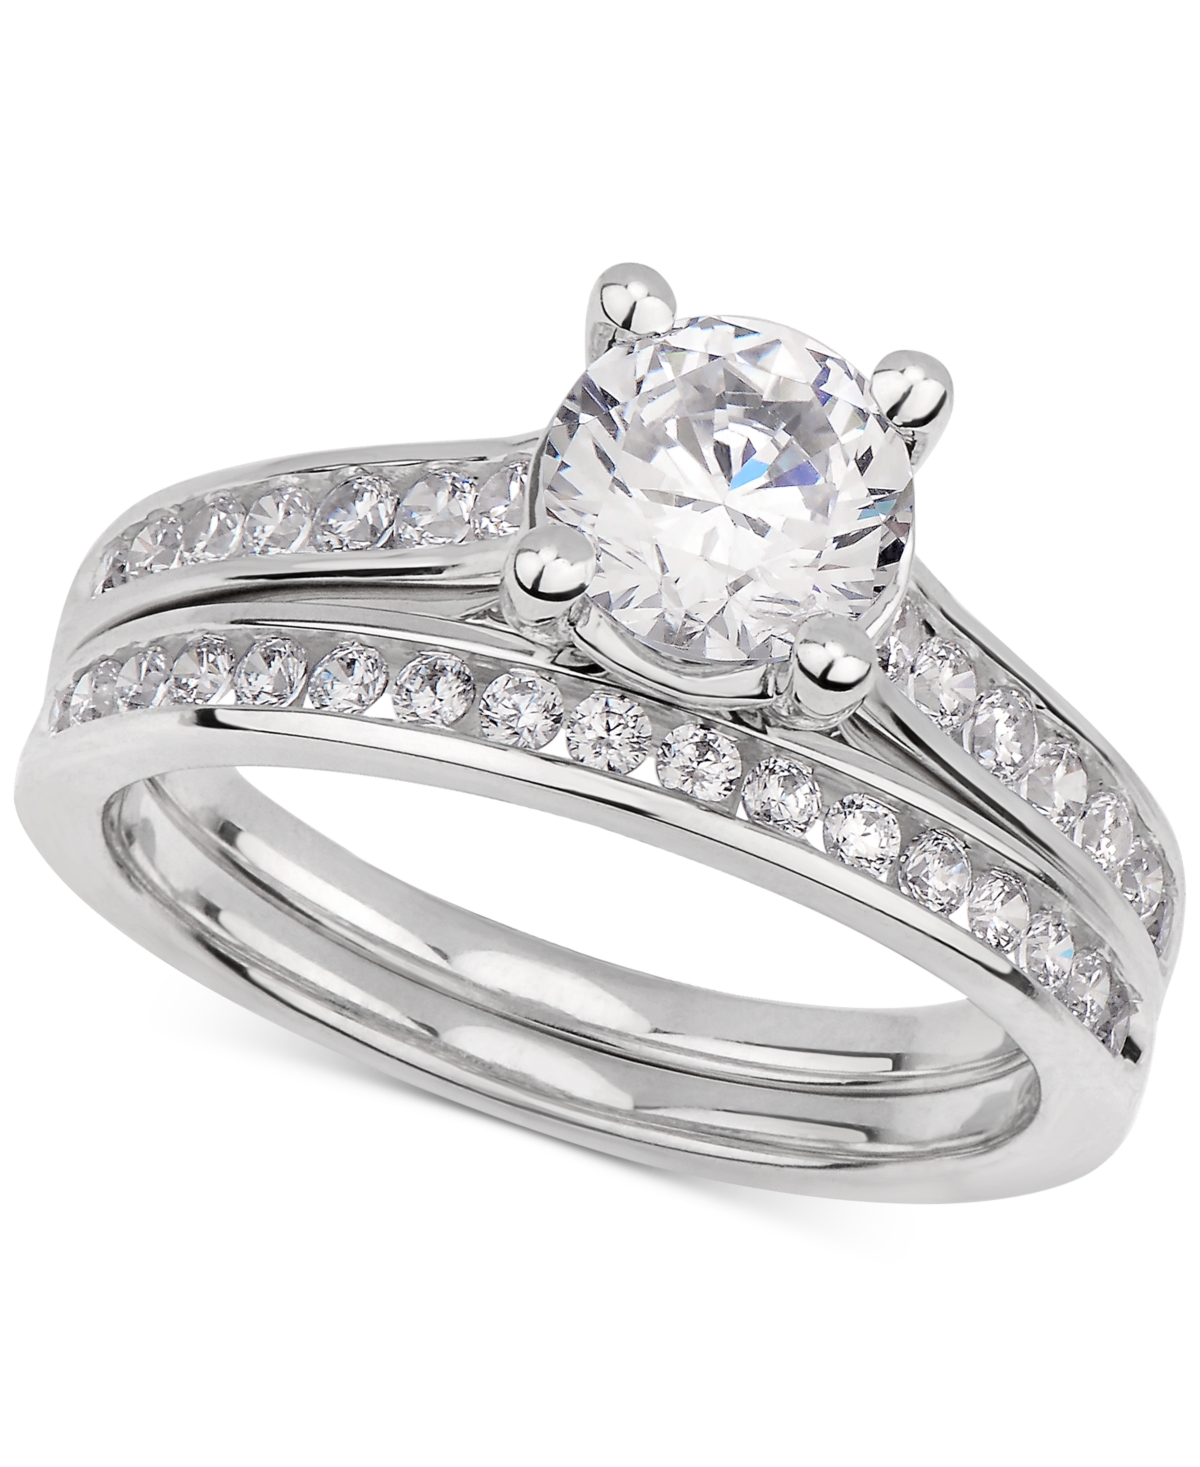 Gia Certified Diamond Bridal Set (1-1/2 ct. t.w.) in 14k White Gold - White Gold